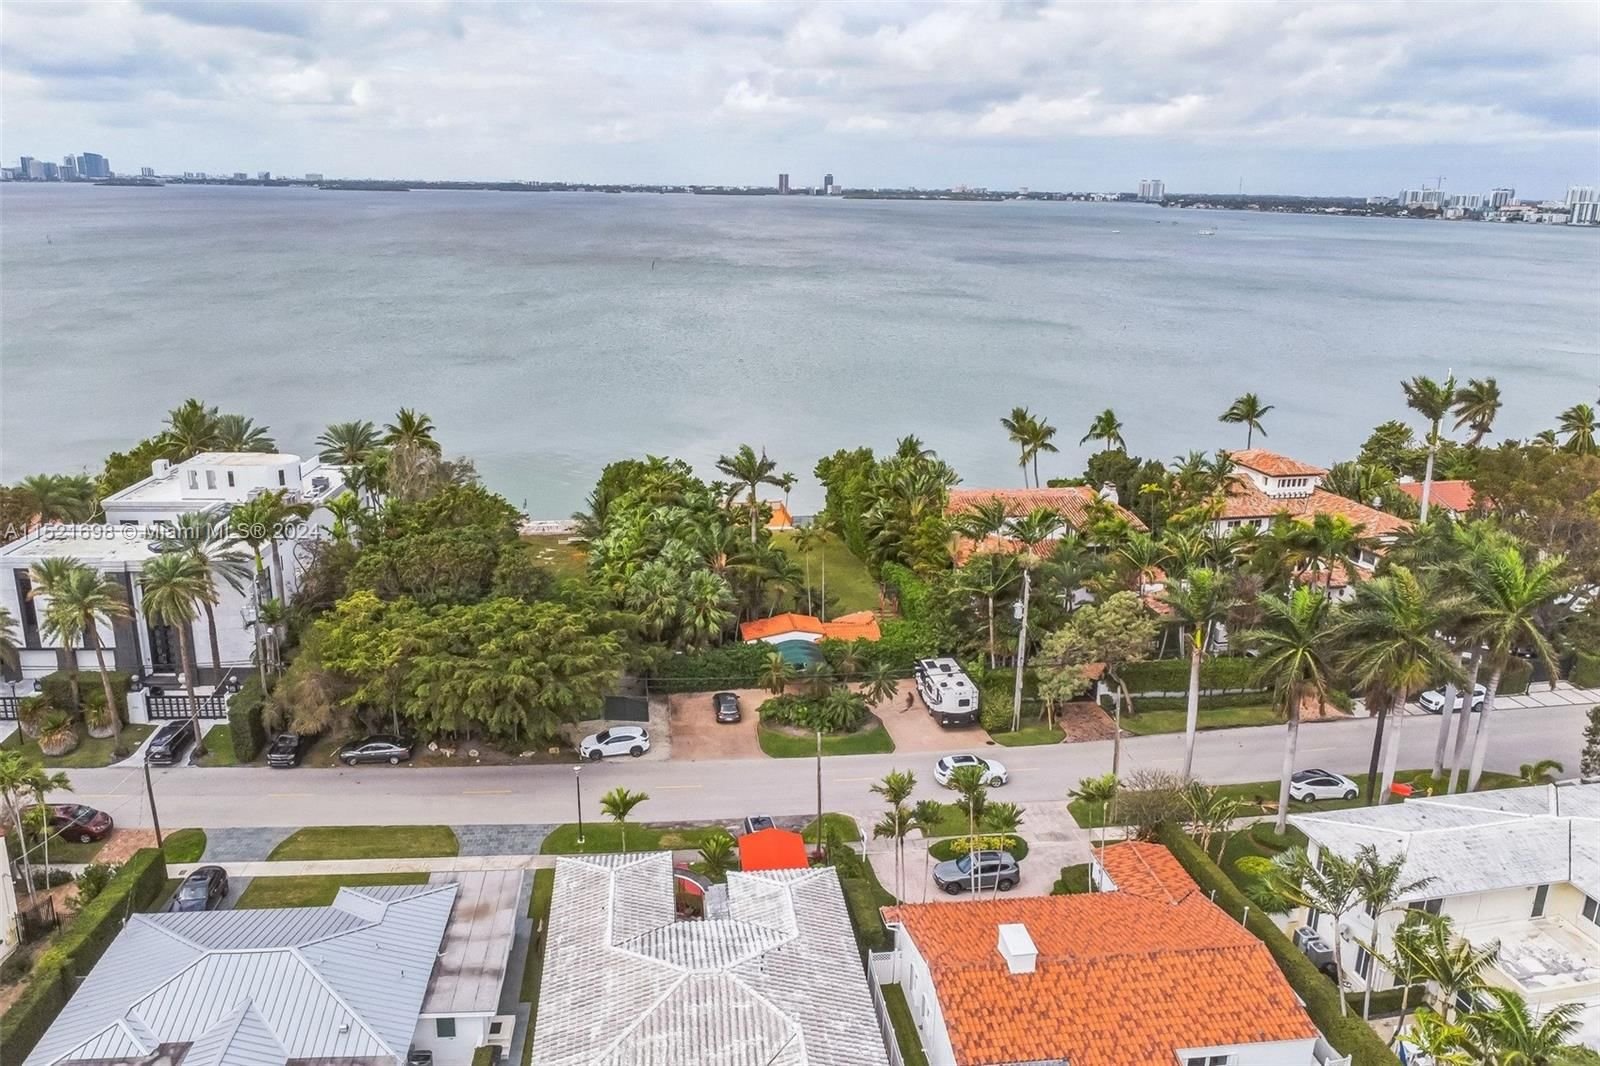 Real estate property located at 5361 Bay Rd, Miami-Dade County, LA GORCE SUB, Miami Beach, FL